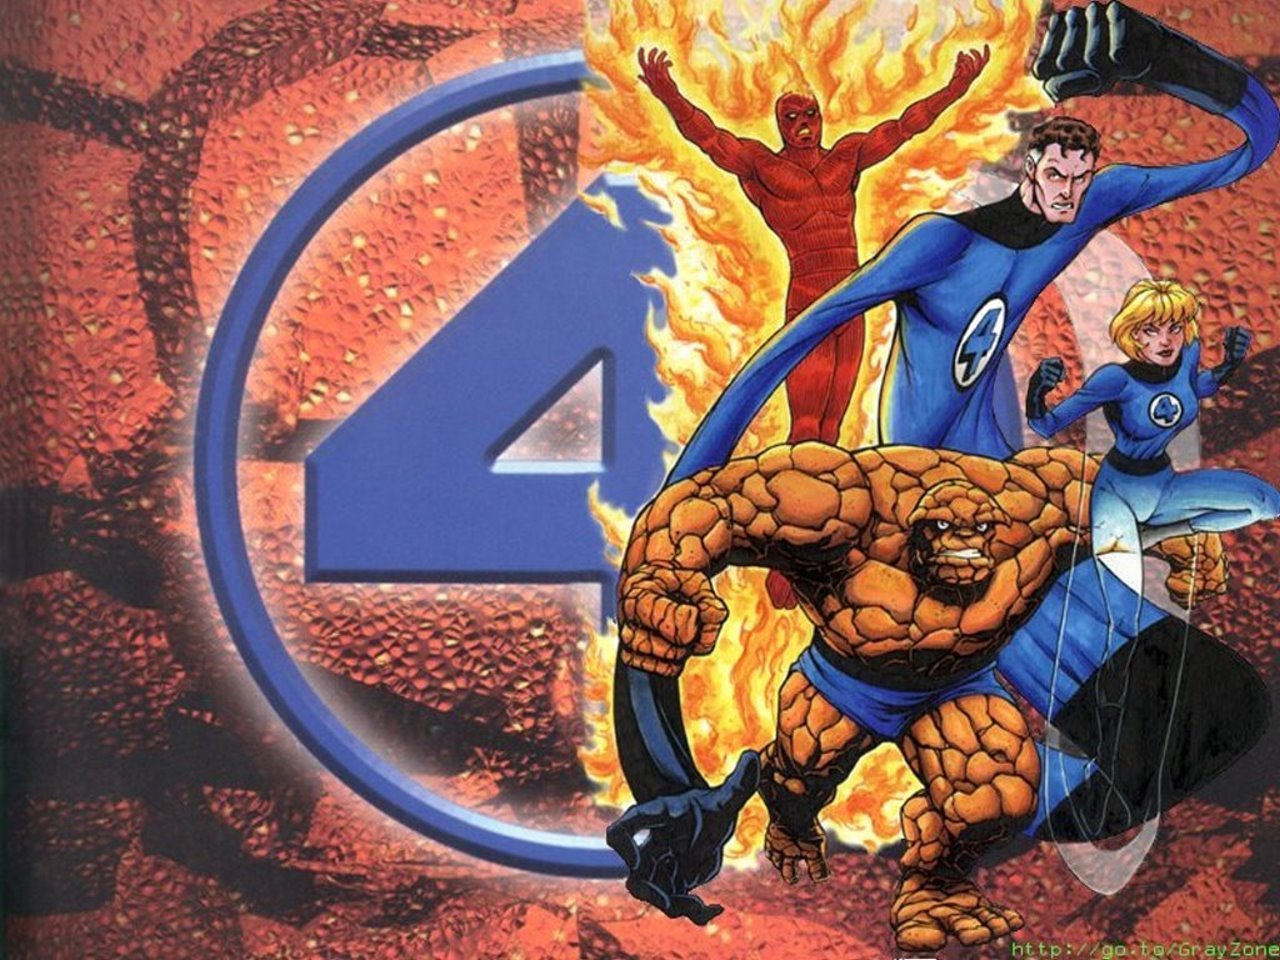 Fantastic Four Marvel Ics Wallpaper